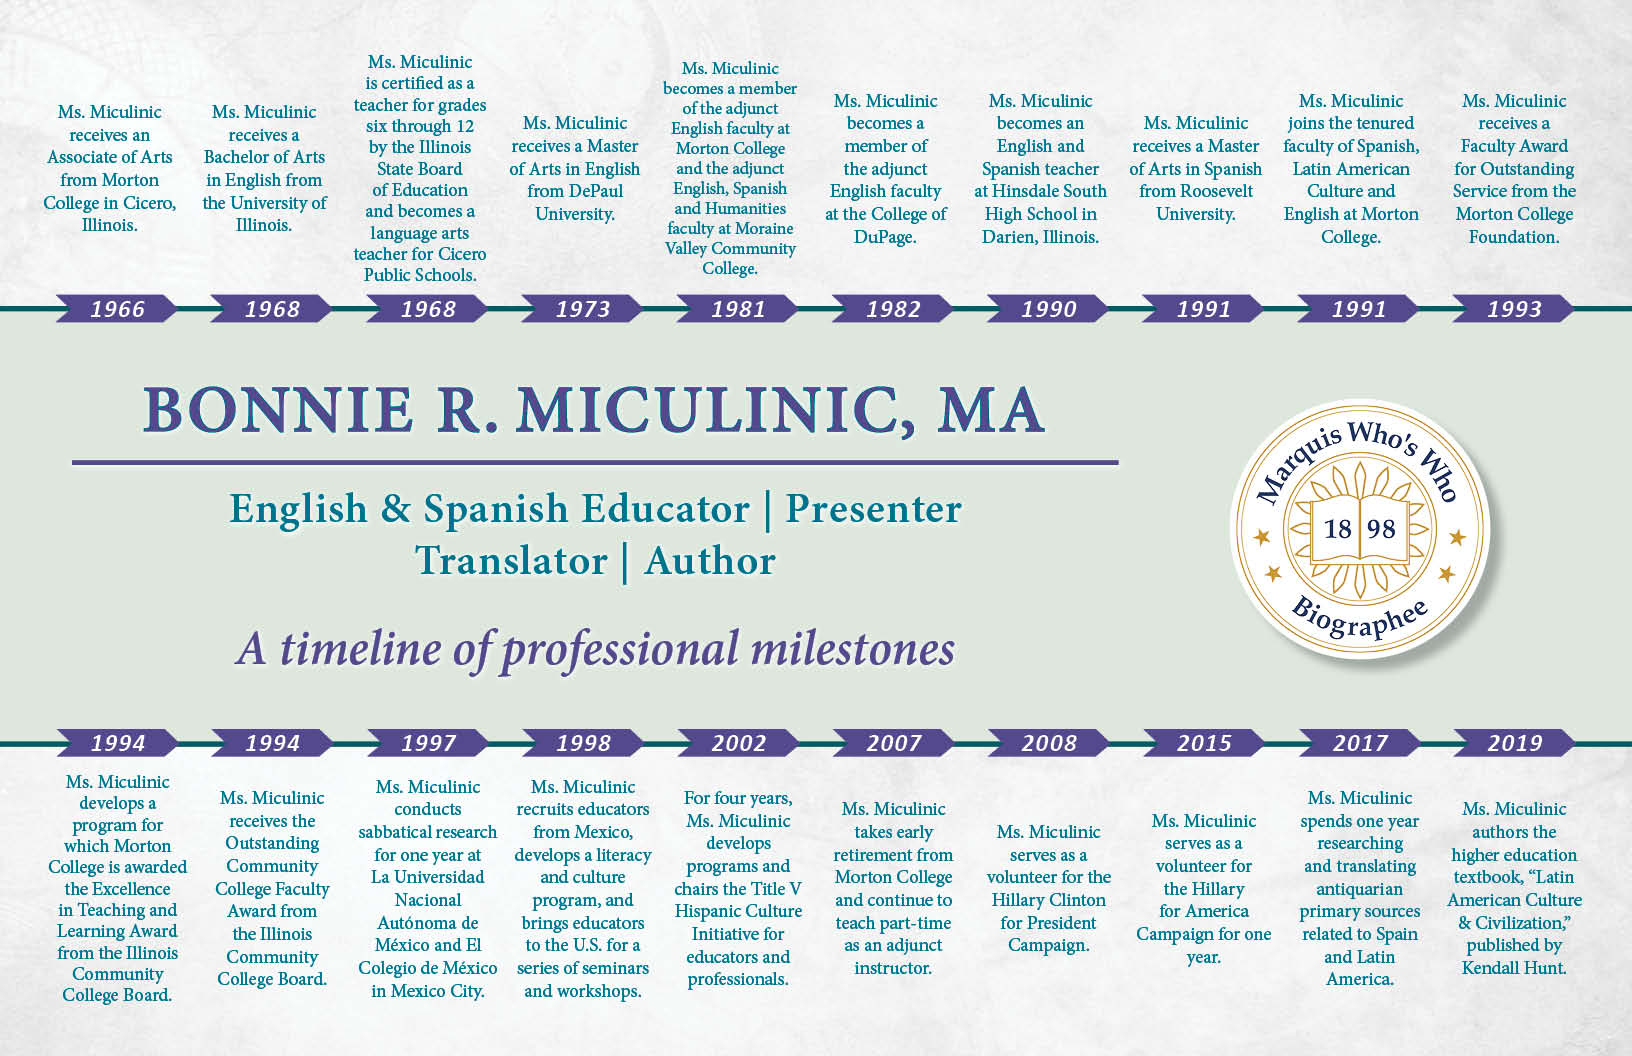 Bonnie Miculinic Professional Milestones